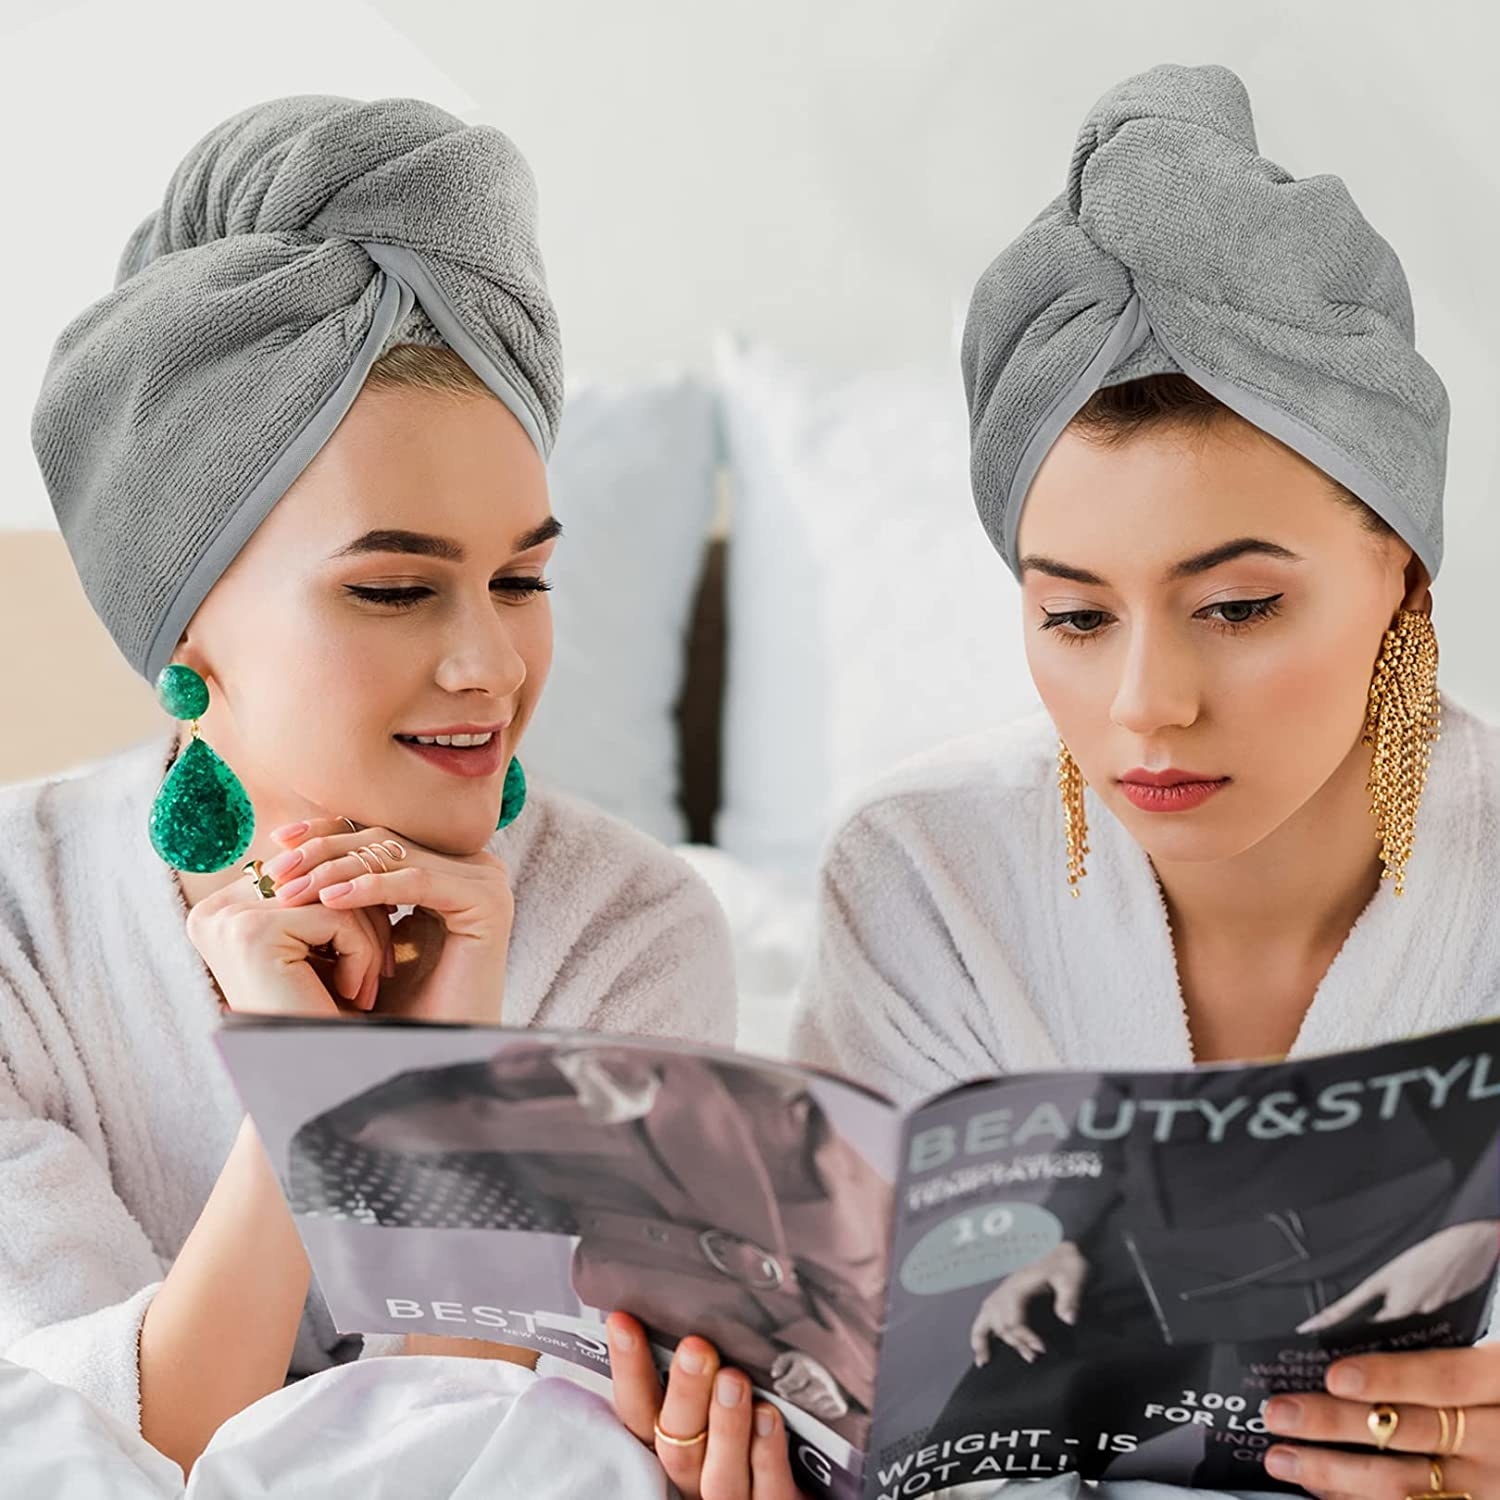 two models wearing microfiber hair towels